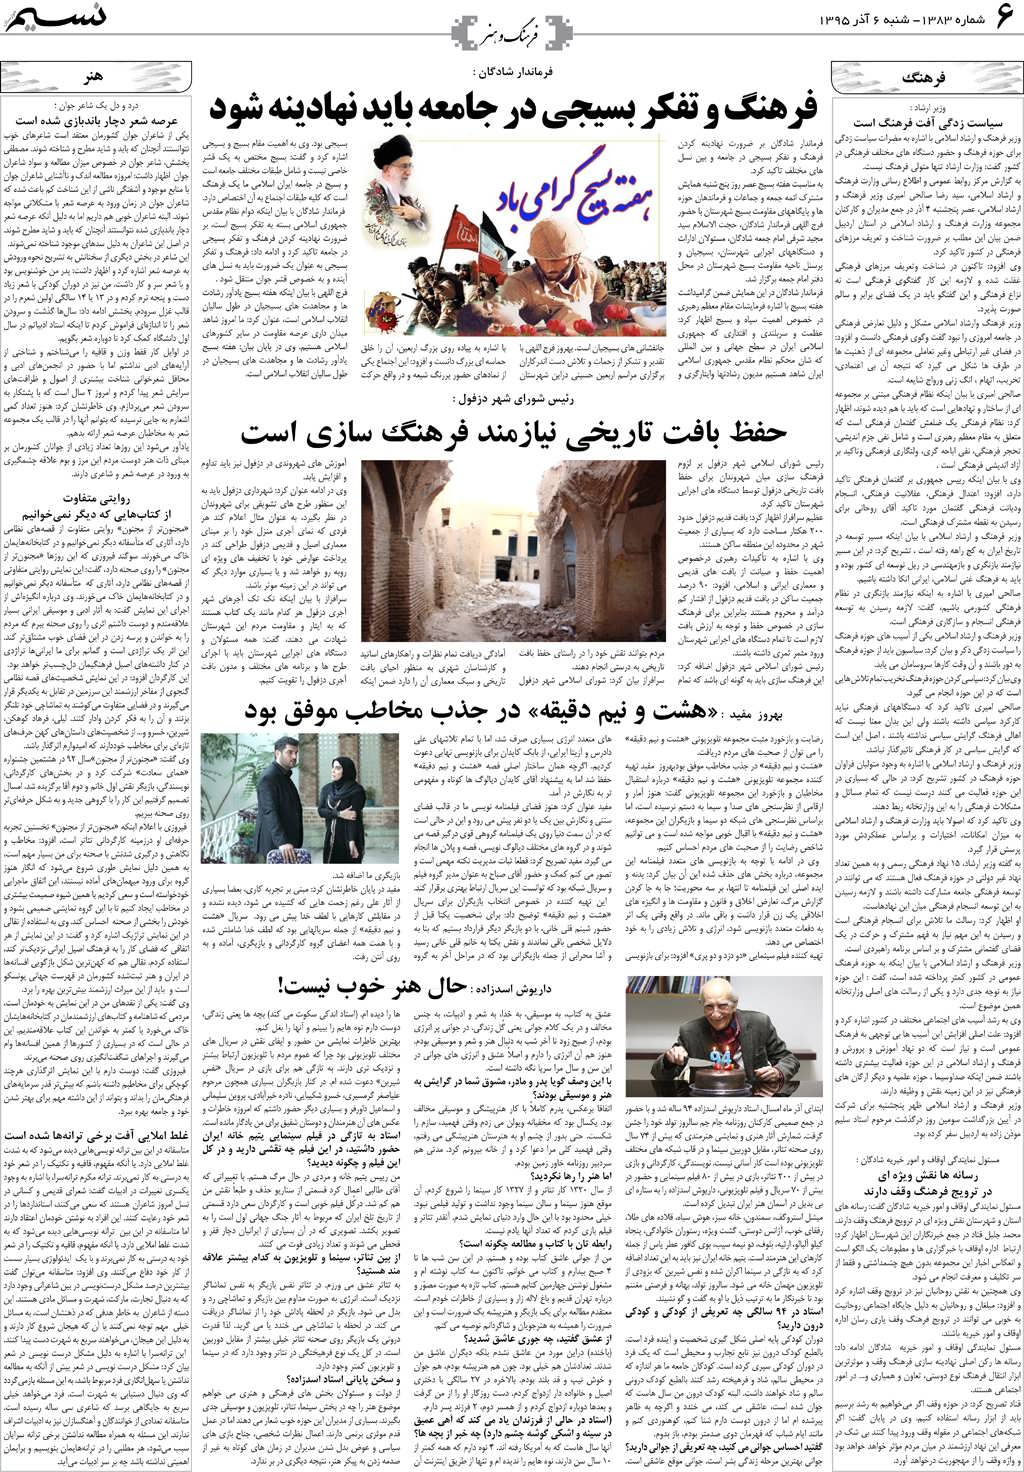 صفحه فرهنگ و هنر روزنامه نسیم شماره 1383